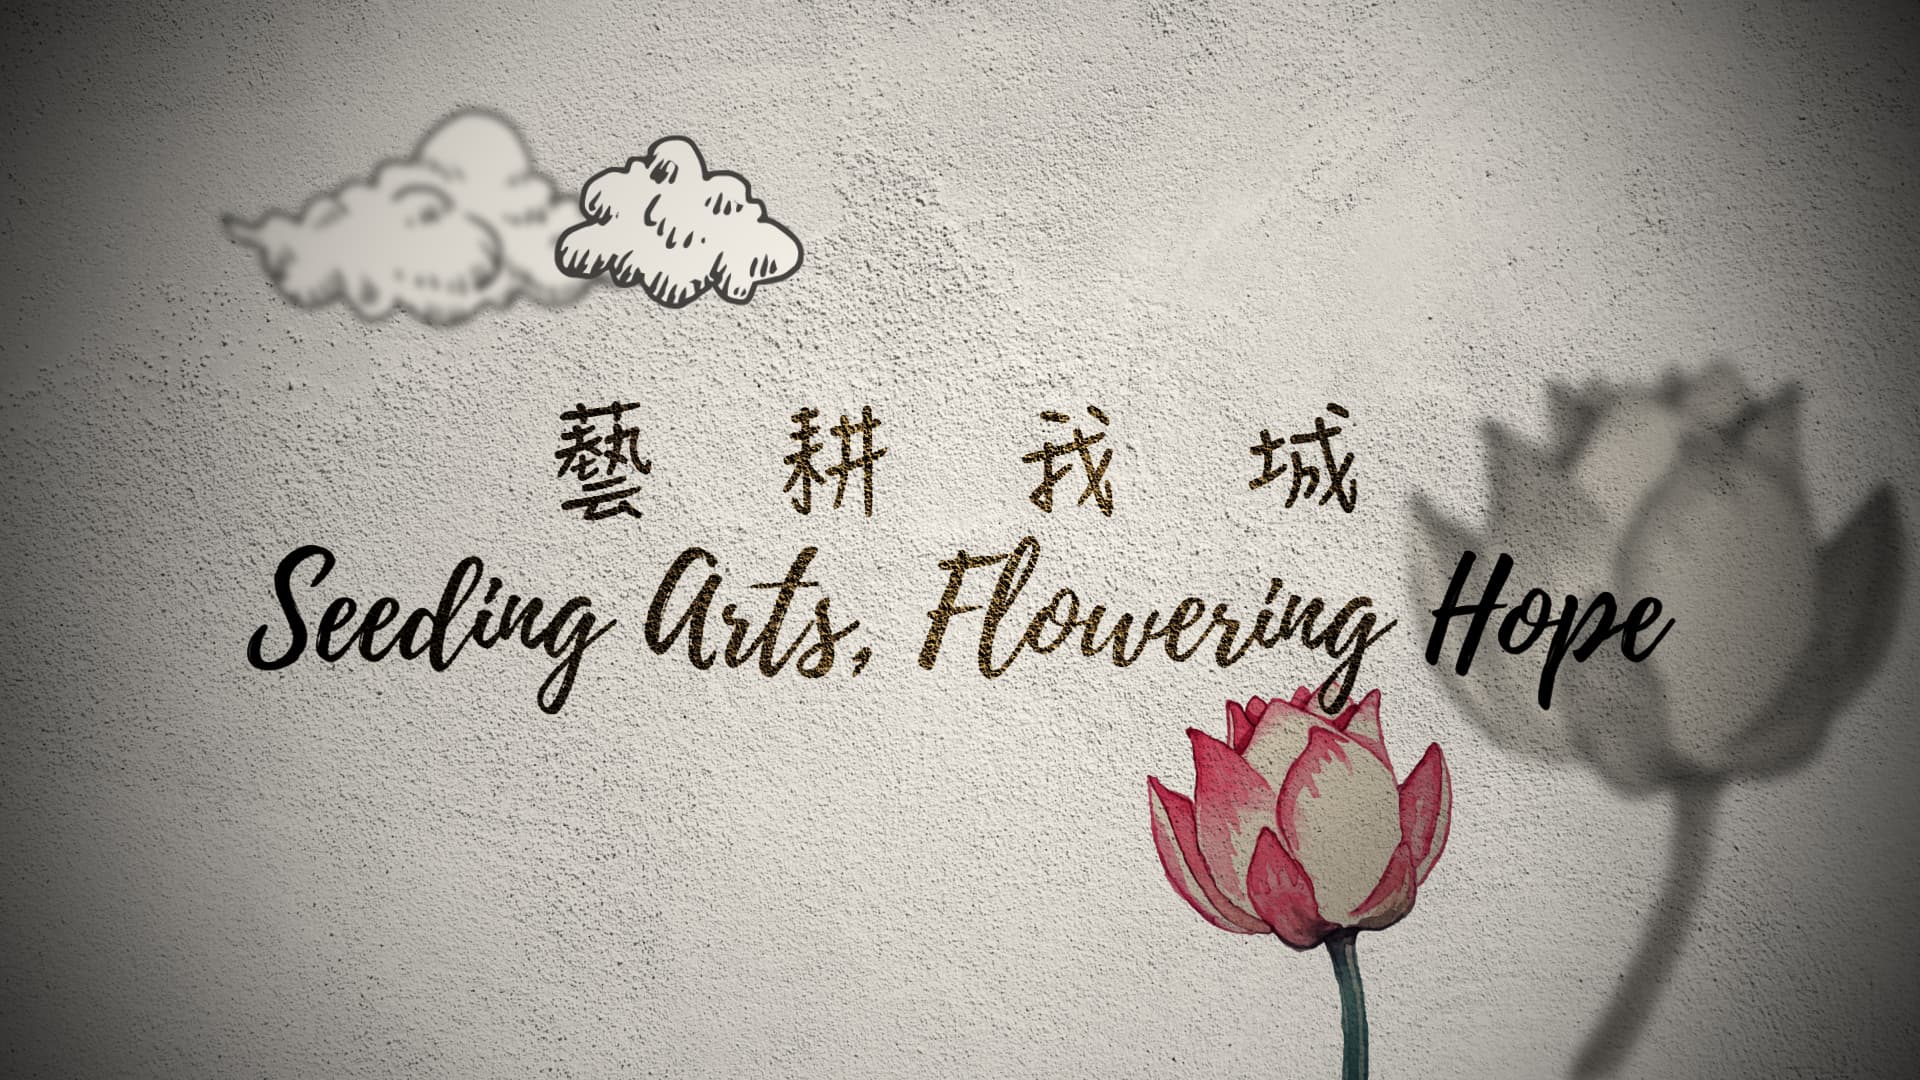 [홍콩/해외문화PD] Seeding Arts Flowering Hope